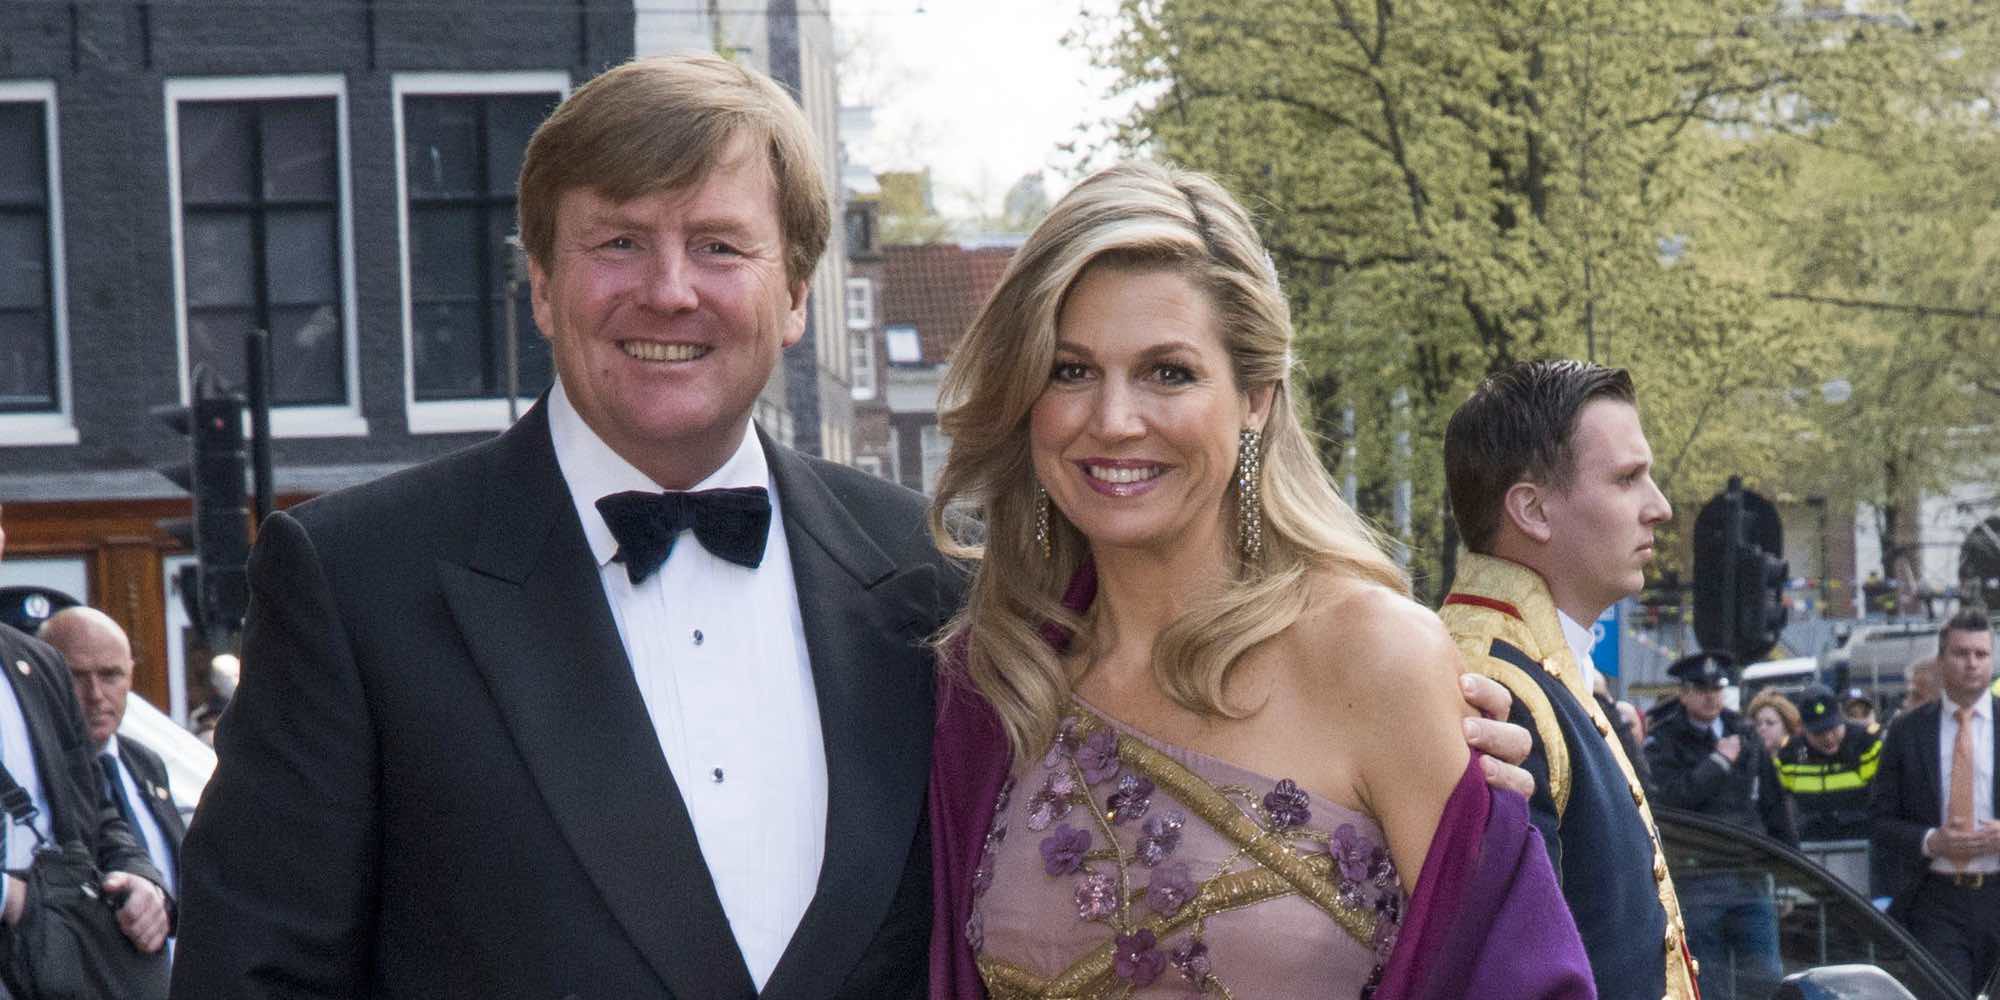 Máxima de Holanda, la más entregada en la cena de gala por el 50 cumpleaños del Rey Guillermo de Holanda